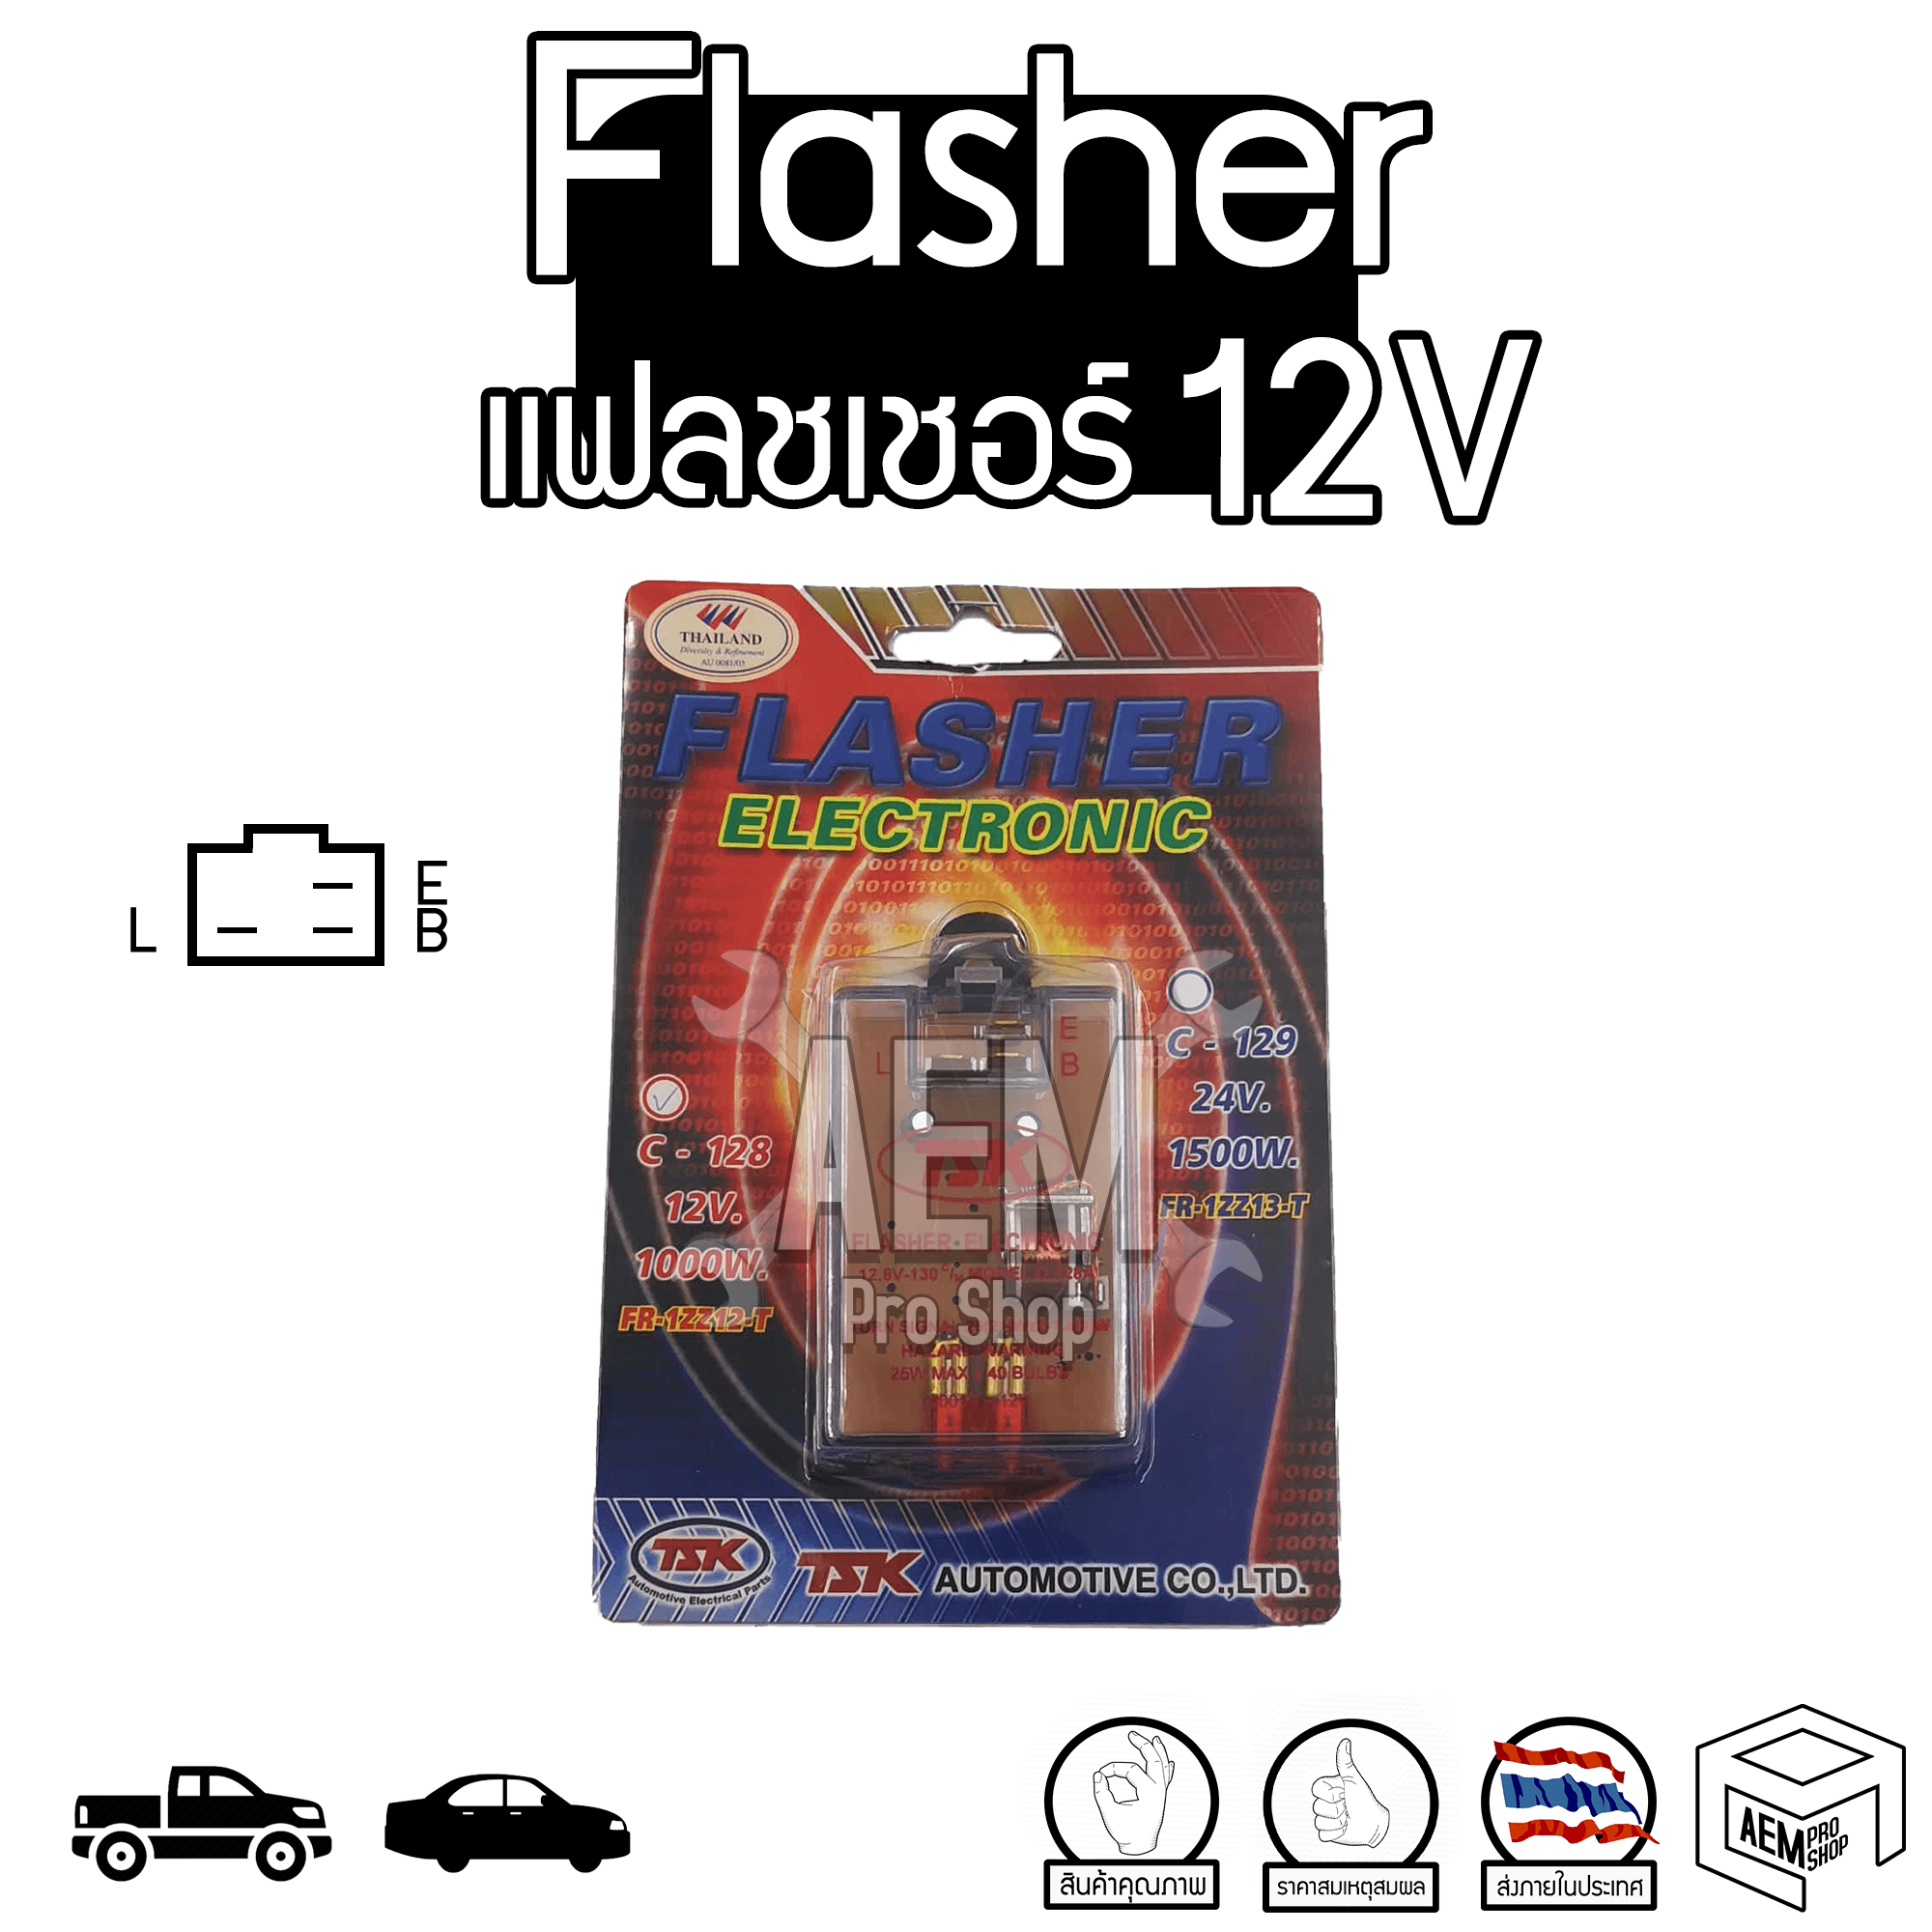 Flasher Relay แฟลชเชอร์ รีเลย์ ไฟเลี้ยว เปลือย 12V รถยนต์